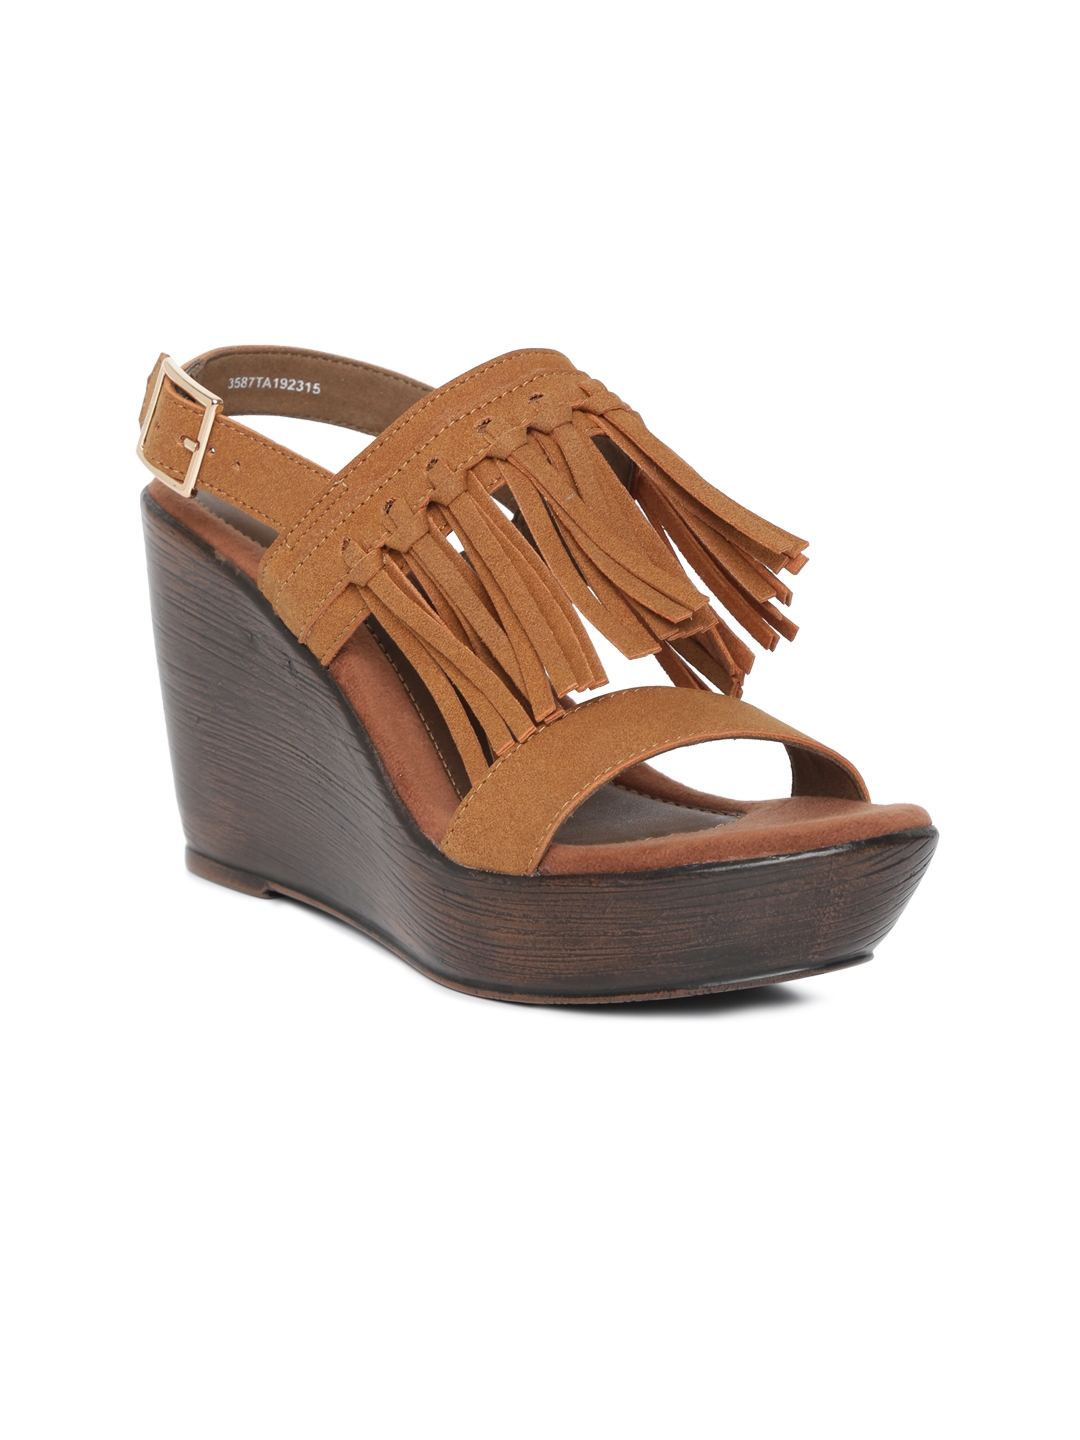 Buy Catwalk Women Tan Solid Sandals - Heels for Women 8607879 | Myntra